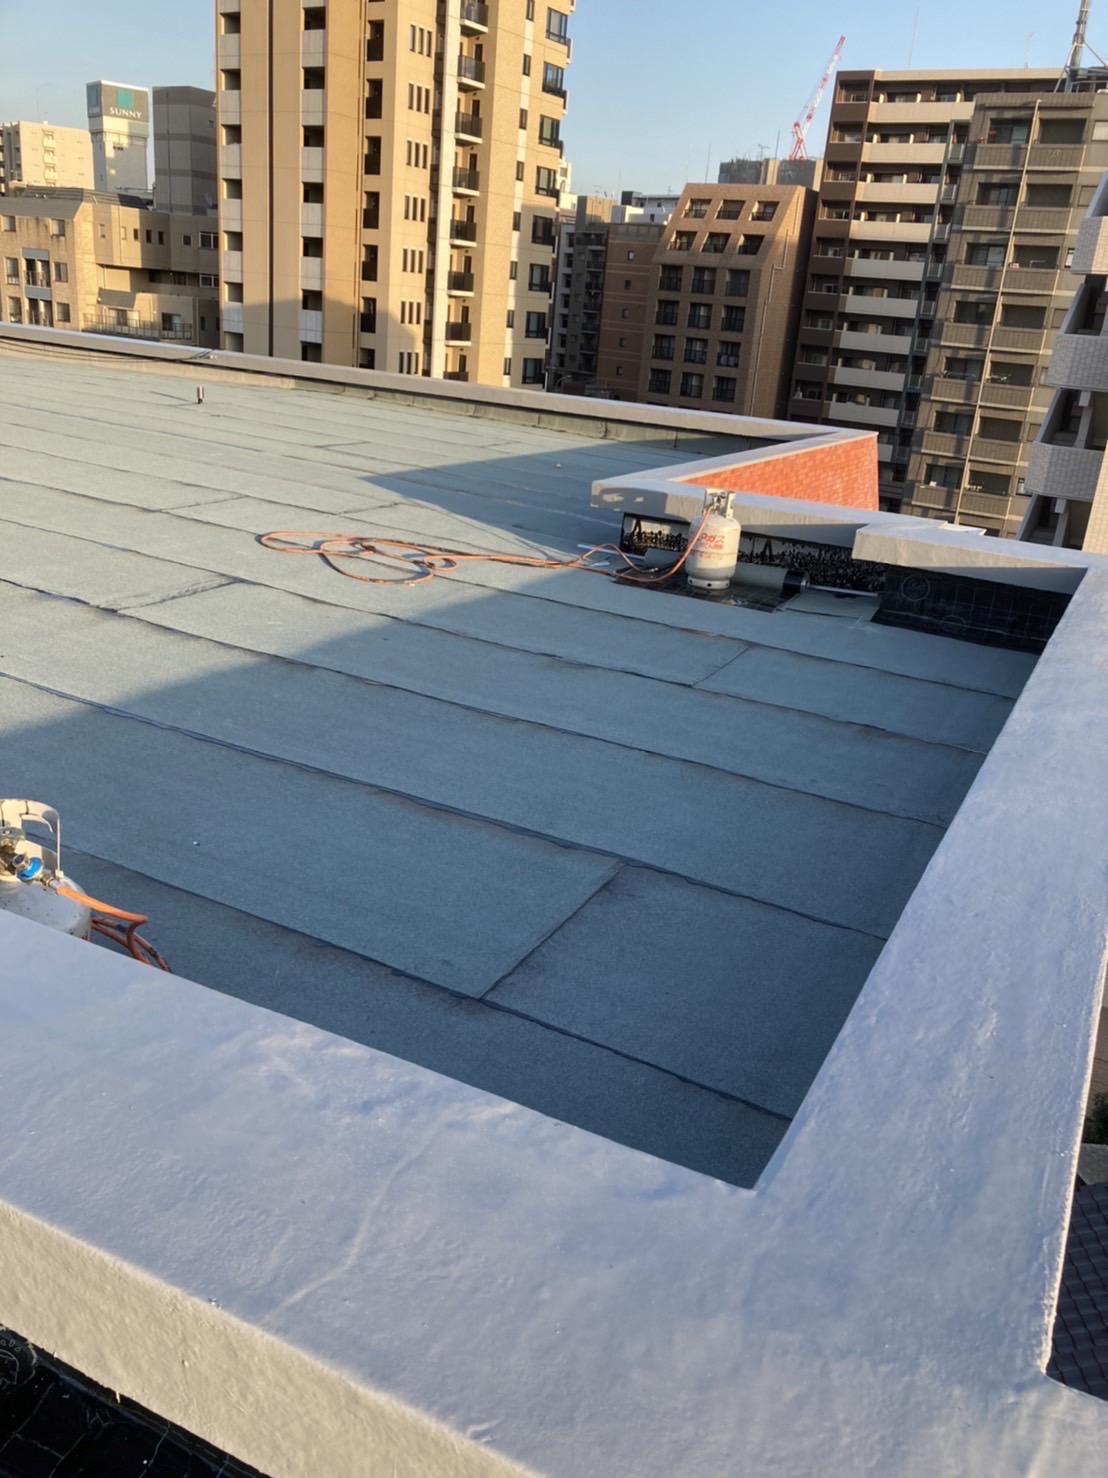 マンションの大規模修繕で行われる屋上防水工事4種類をご紹介！